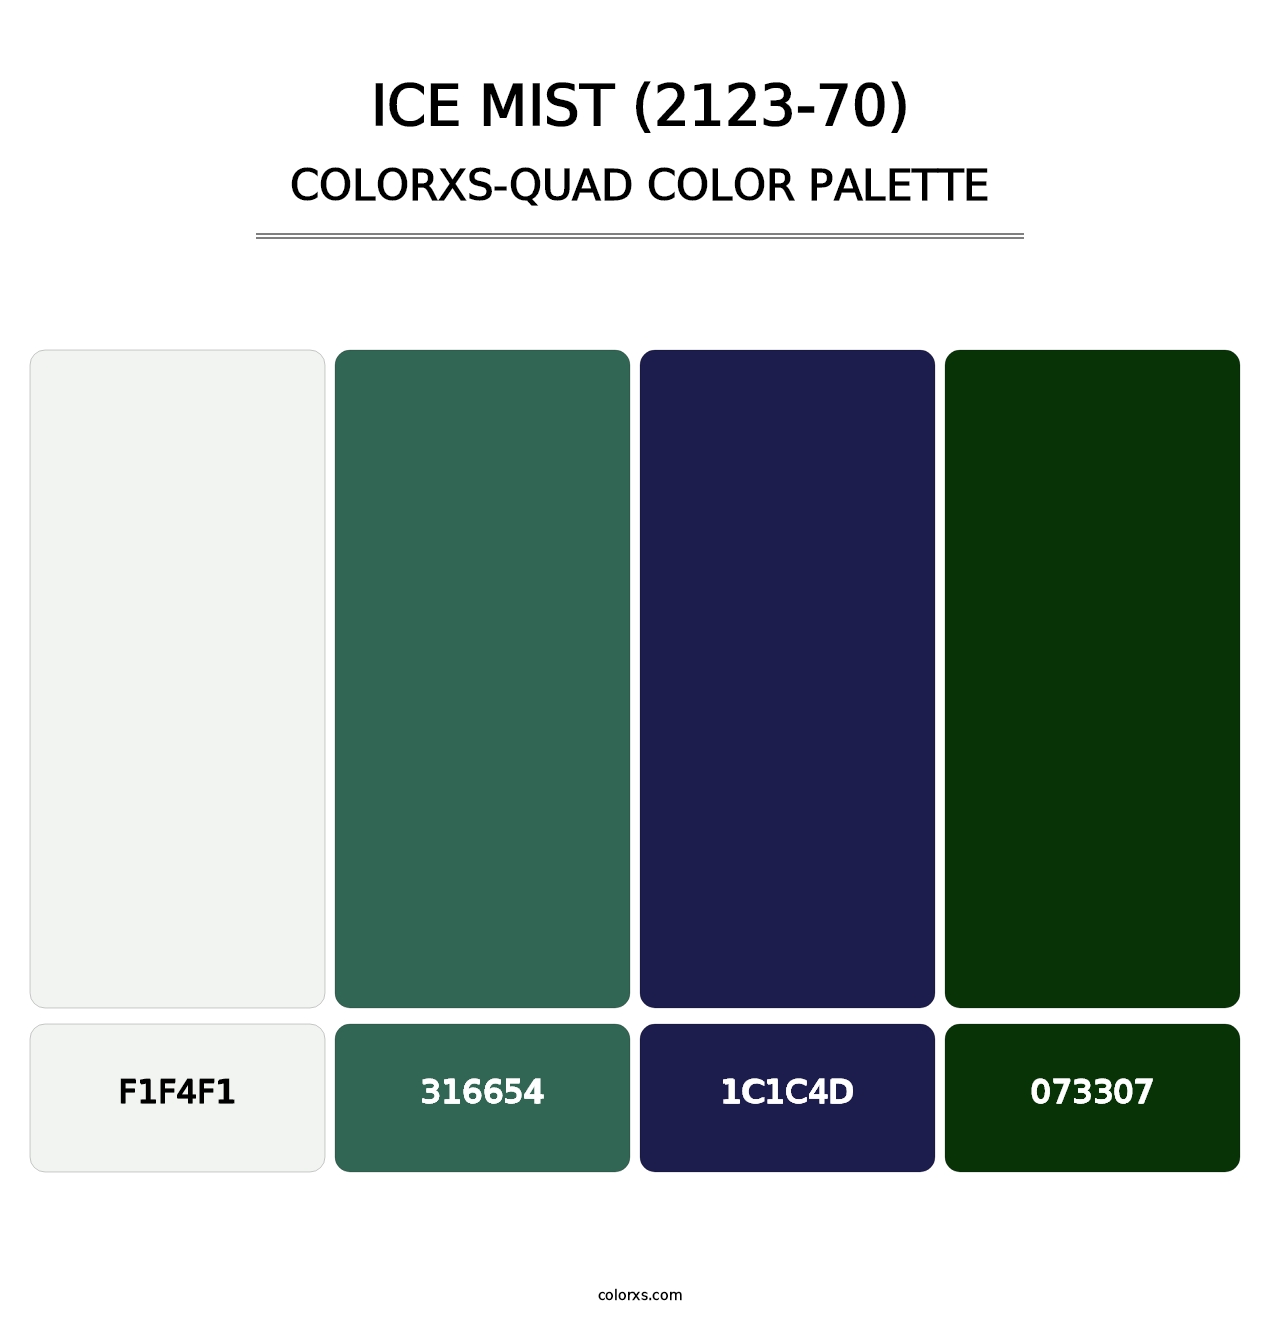 Ice Mist (2123-70) - Colorxs Quad Palette